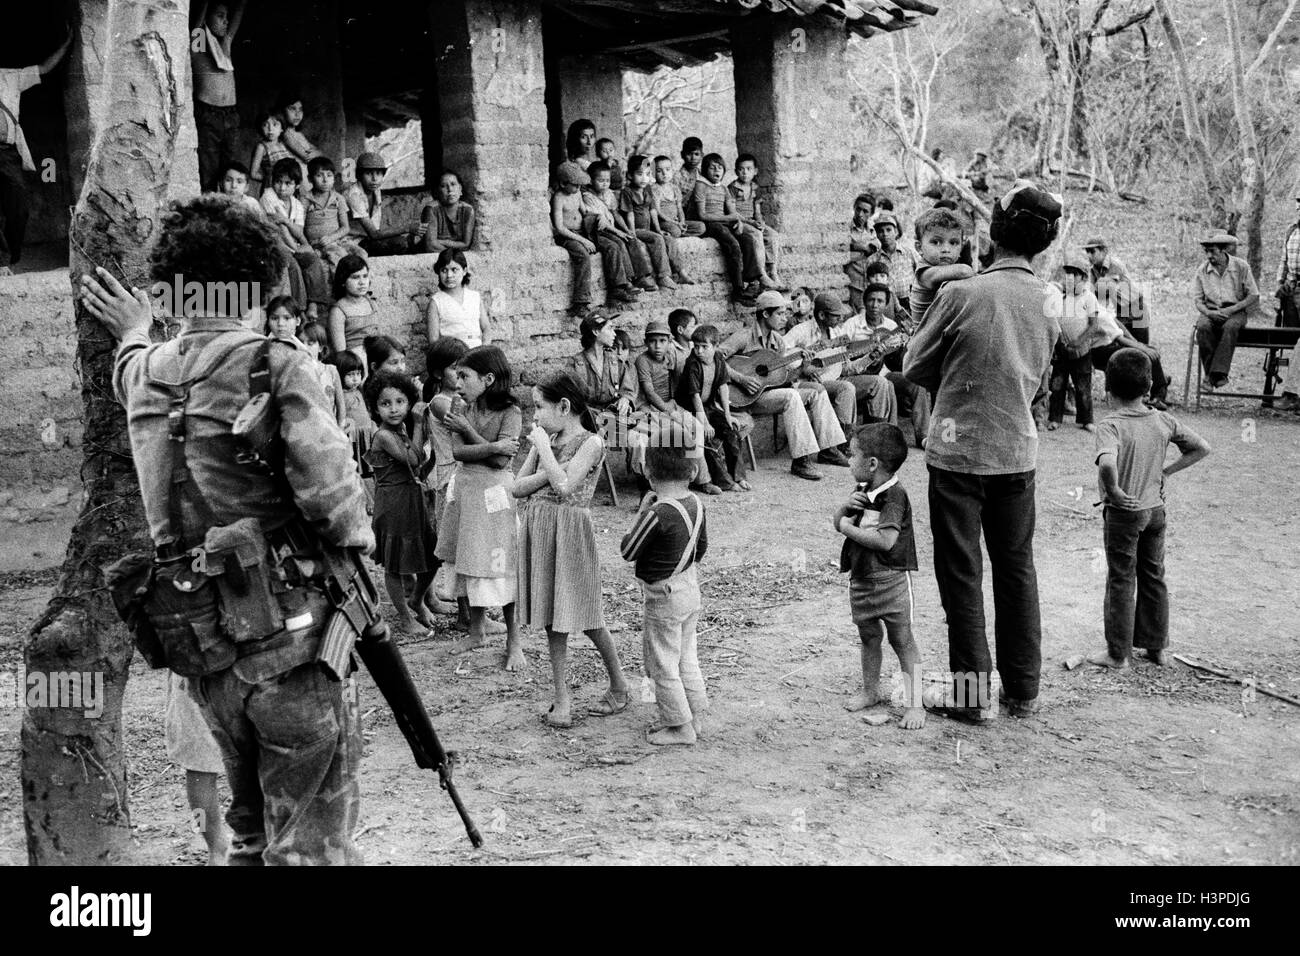 CHALATENANGO, EL SALVADOR, FEB 1984: - innerhalb der FPL-Guerilla Zonen der Steuerung - versammeln sich für einen Abend voller Musik. Stockfoto